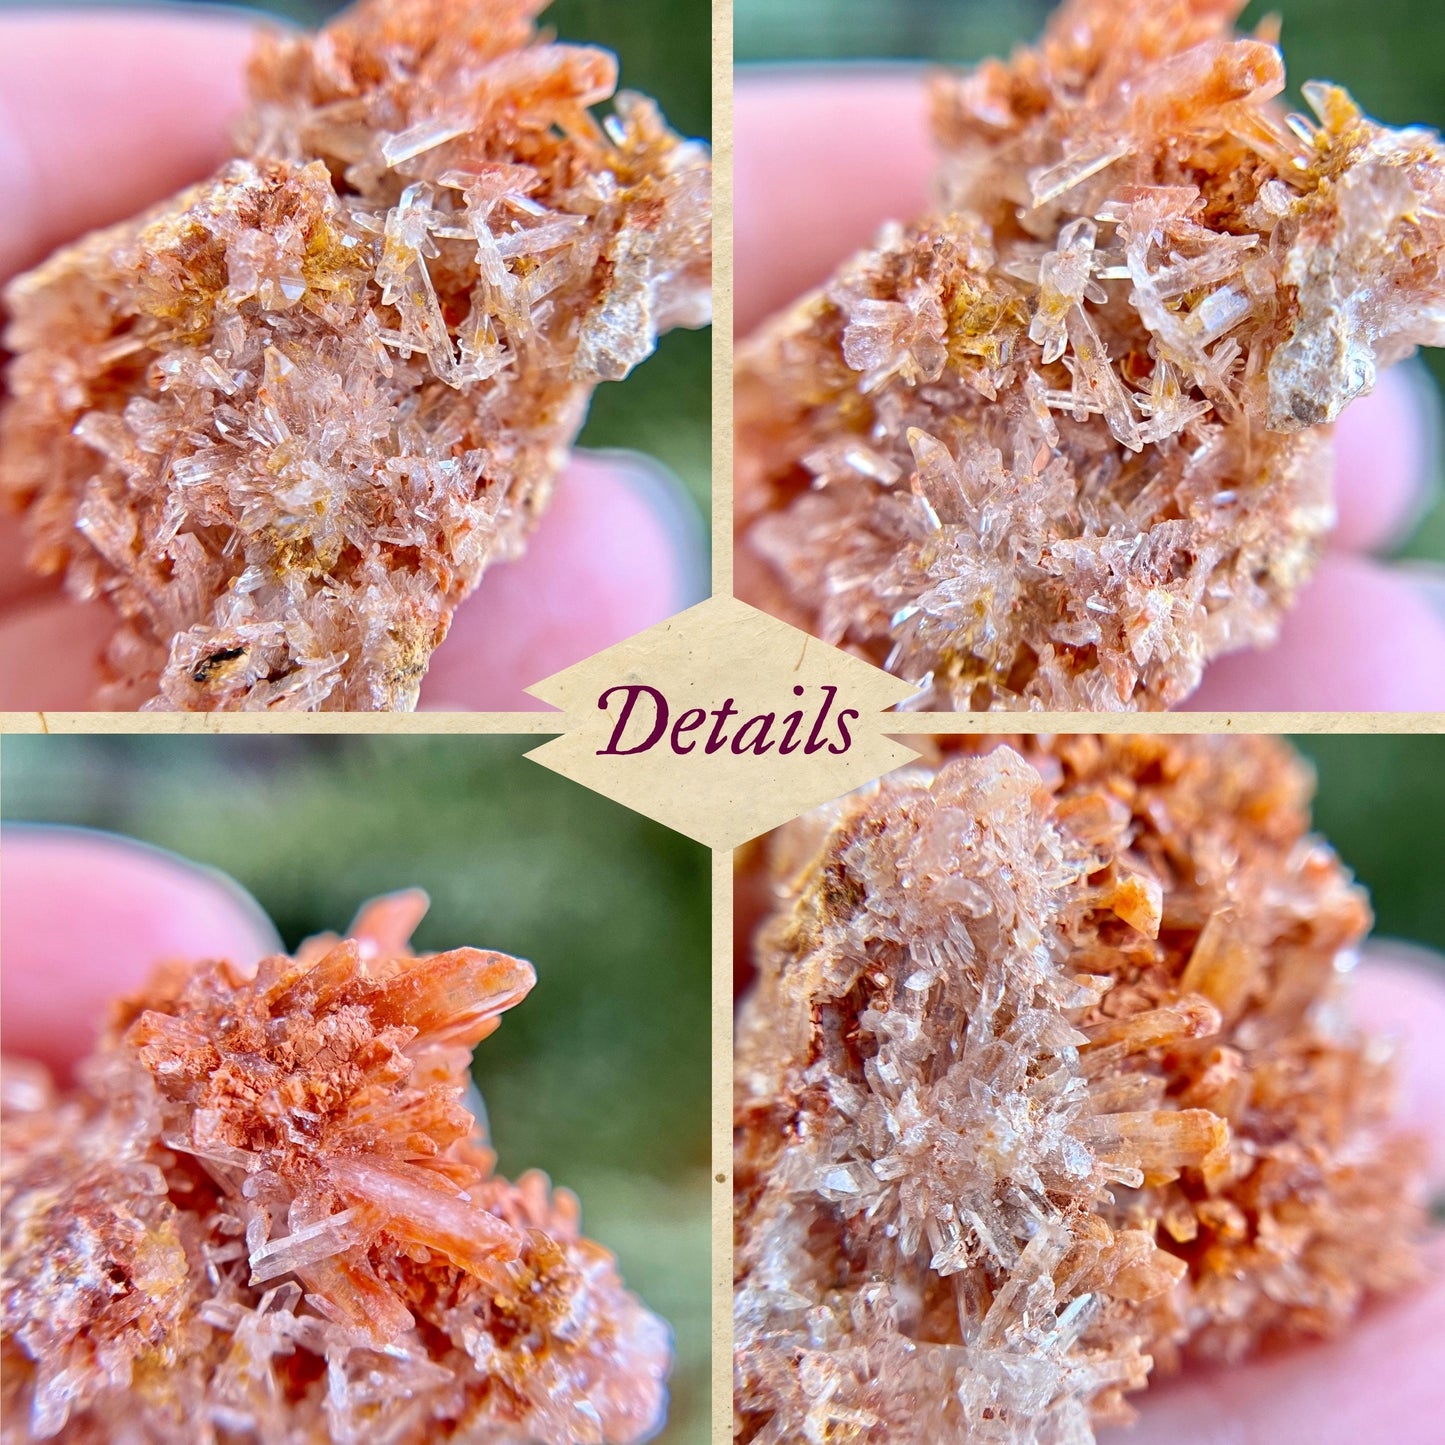 Creedite crystal specimen in rusty brown color